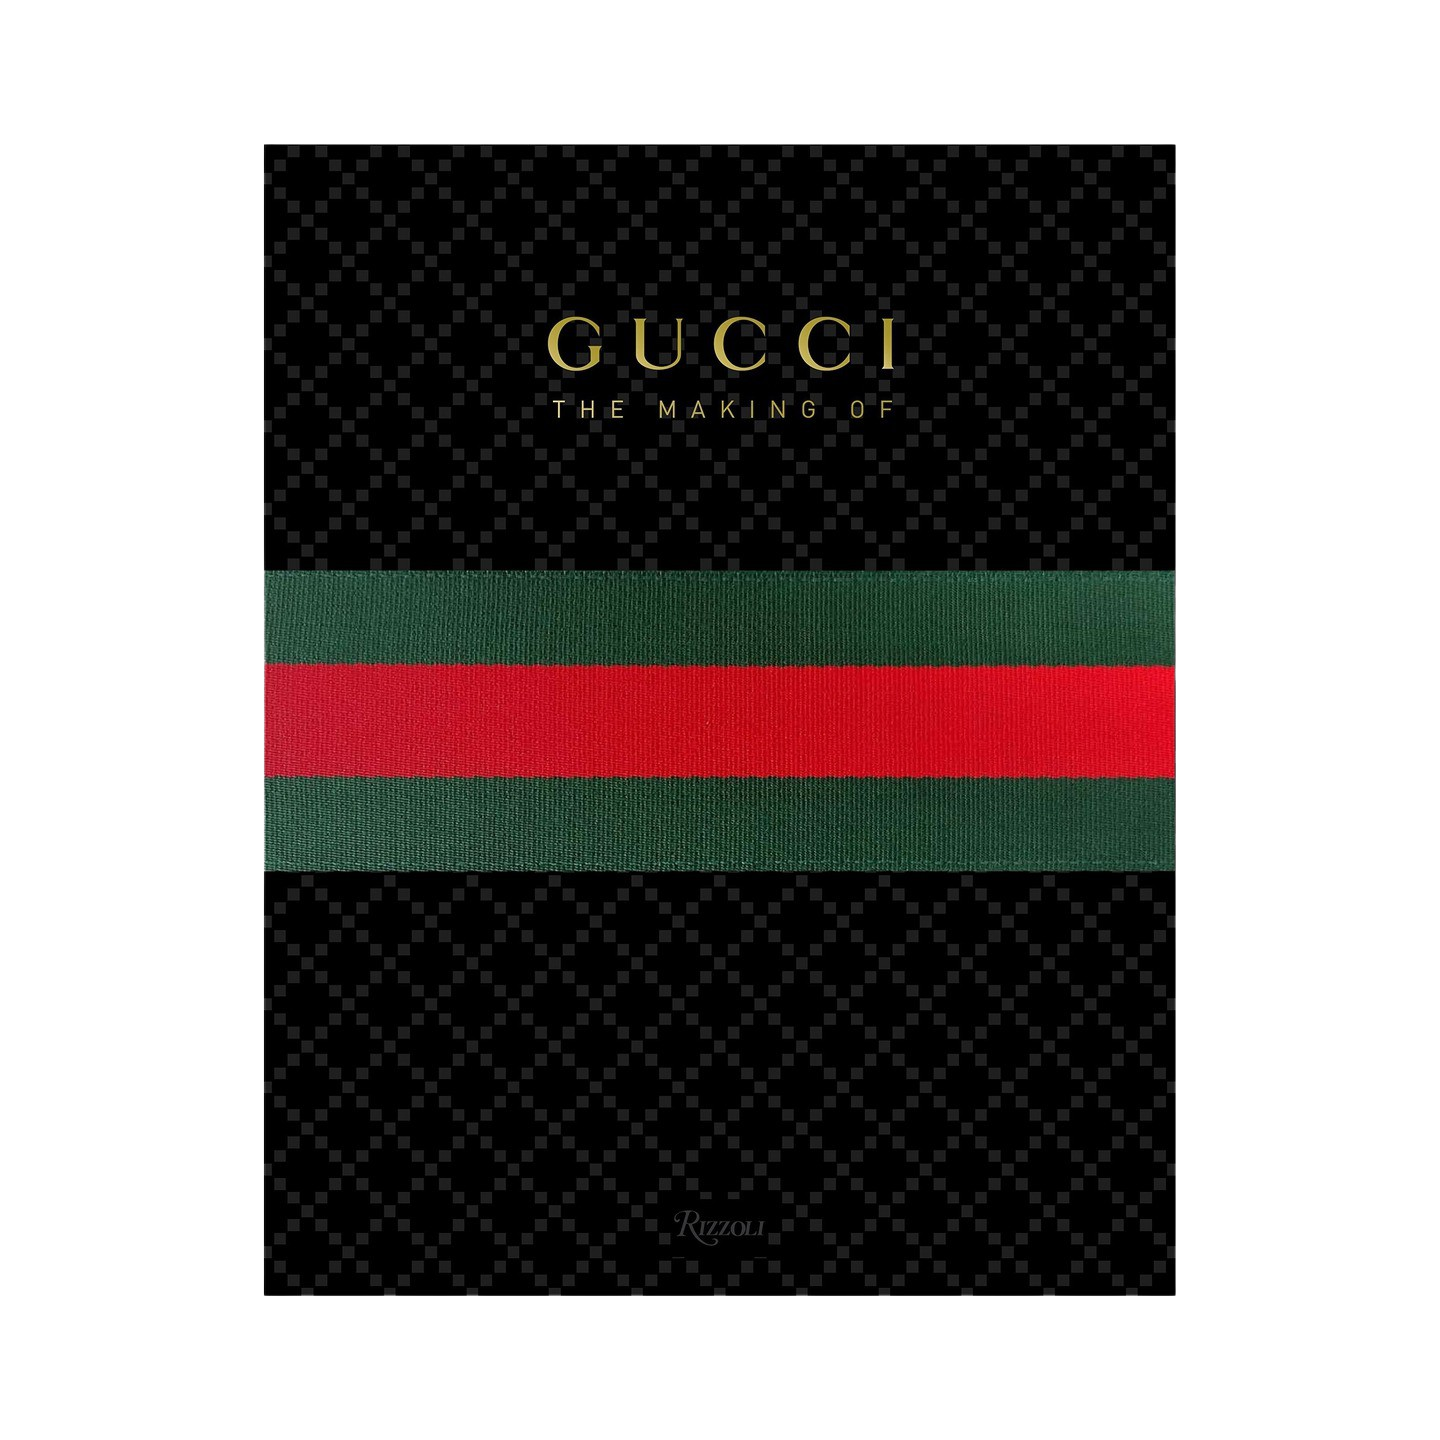 83355 Rizzoli Gucci Coffee table book